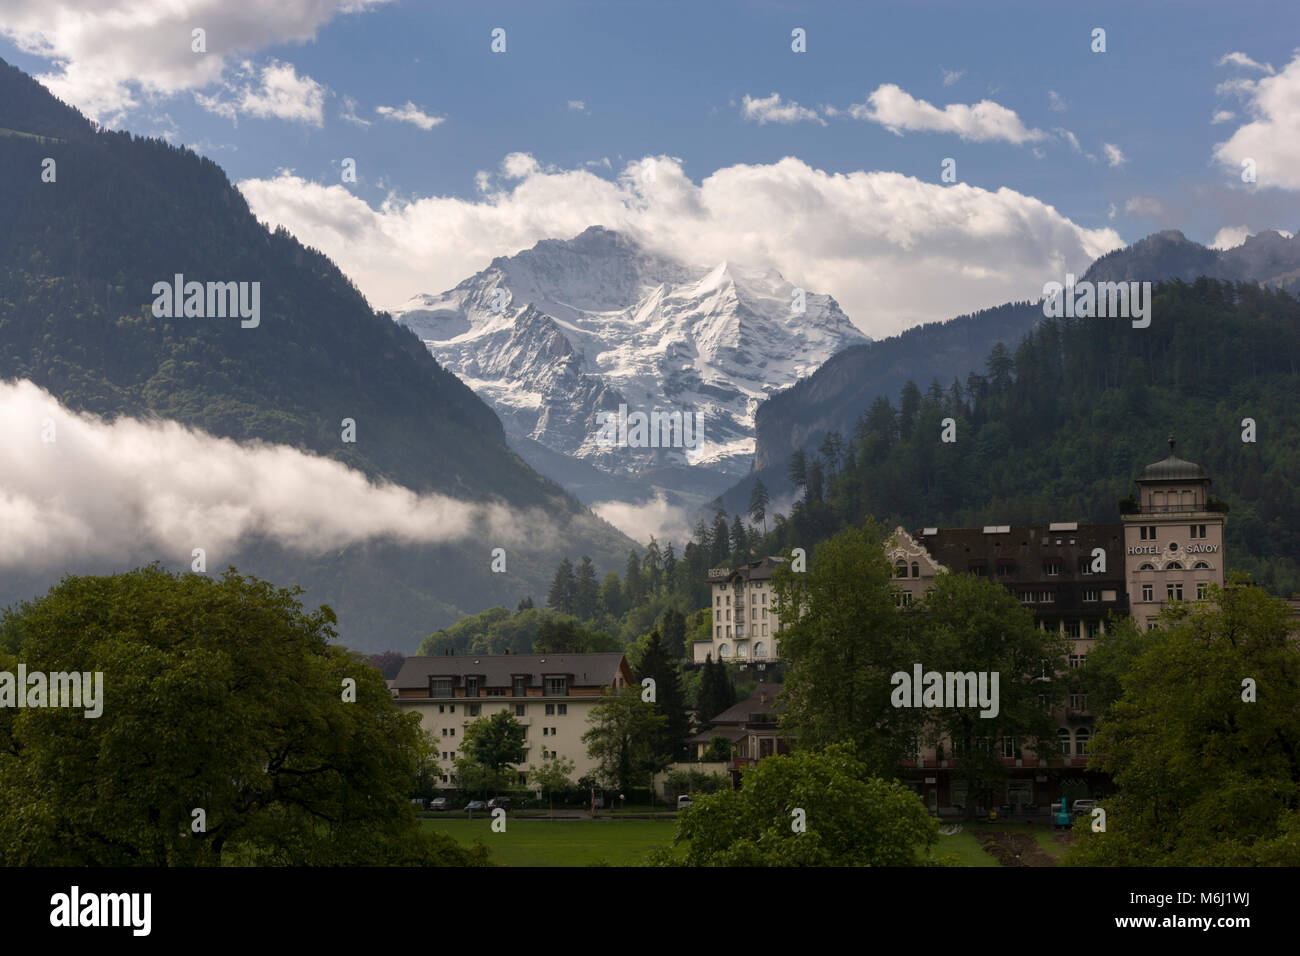 Schneebedeckte Jungfrau schweizer Alpen Interlaken Bern Schweiz Sommer blauer Himmel Wolken im Tal Lindner Grand Hotel Beau Rivage Resort Stockfoto